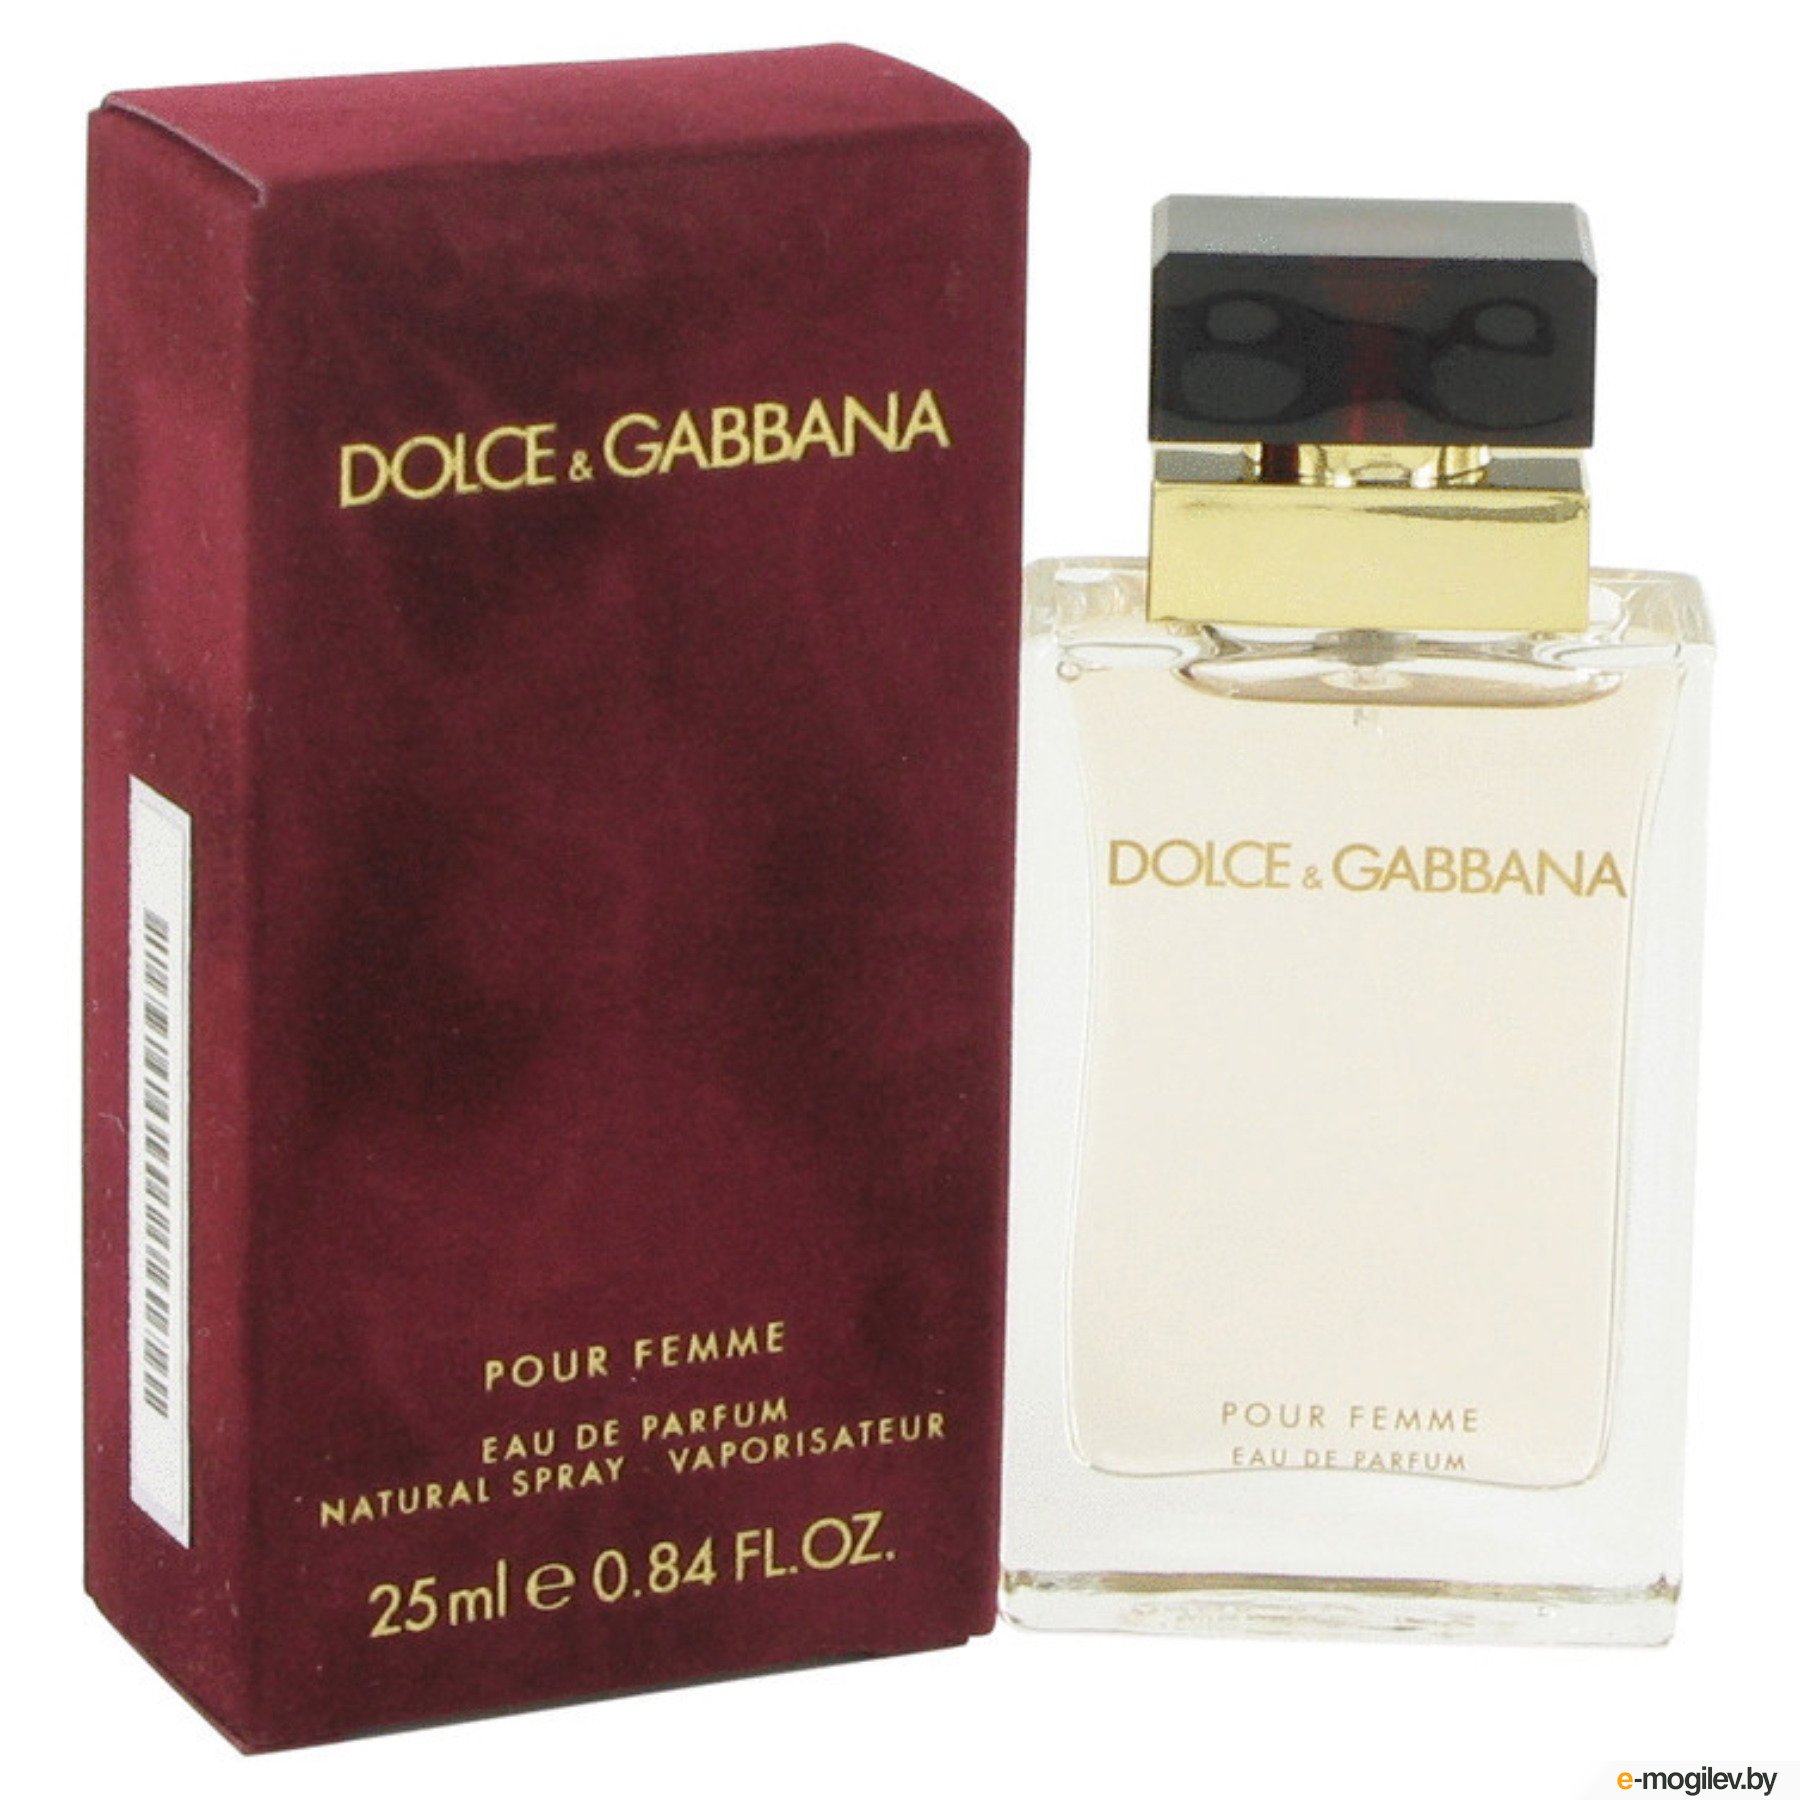 Парфюм дольче габбана в летуаль. Dolce Gabbana pour femme 25ml. Dolce Gabbana pour femme 25 мл. Dolce & Gabbana pour femme 100 мл. Dolce & Gabbana by Dolce & Gabbana Eau de Parfum Spray 100ml.